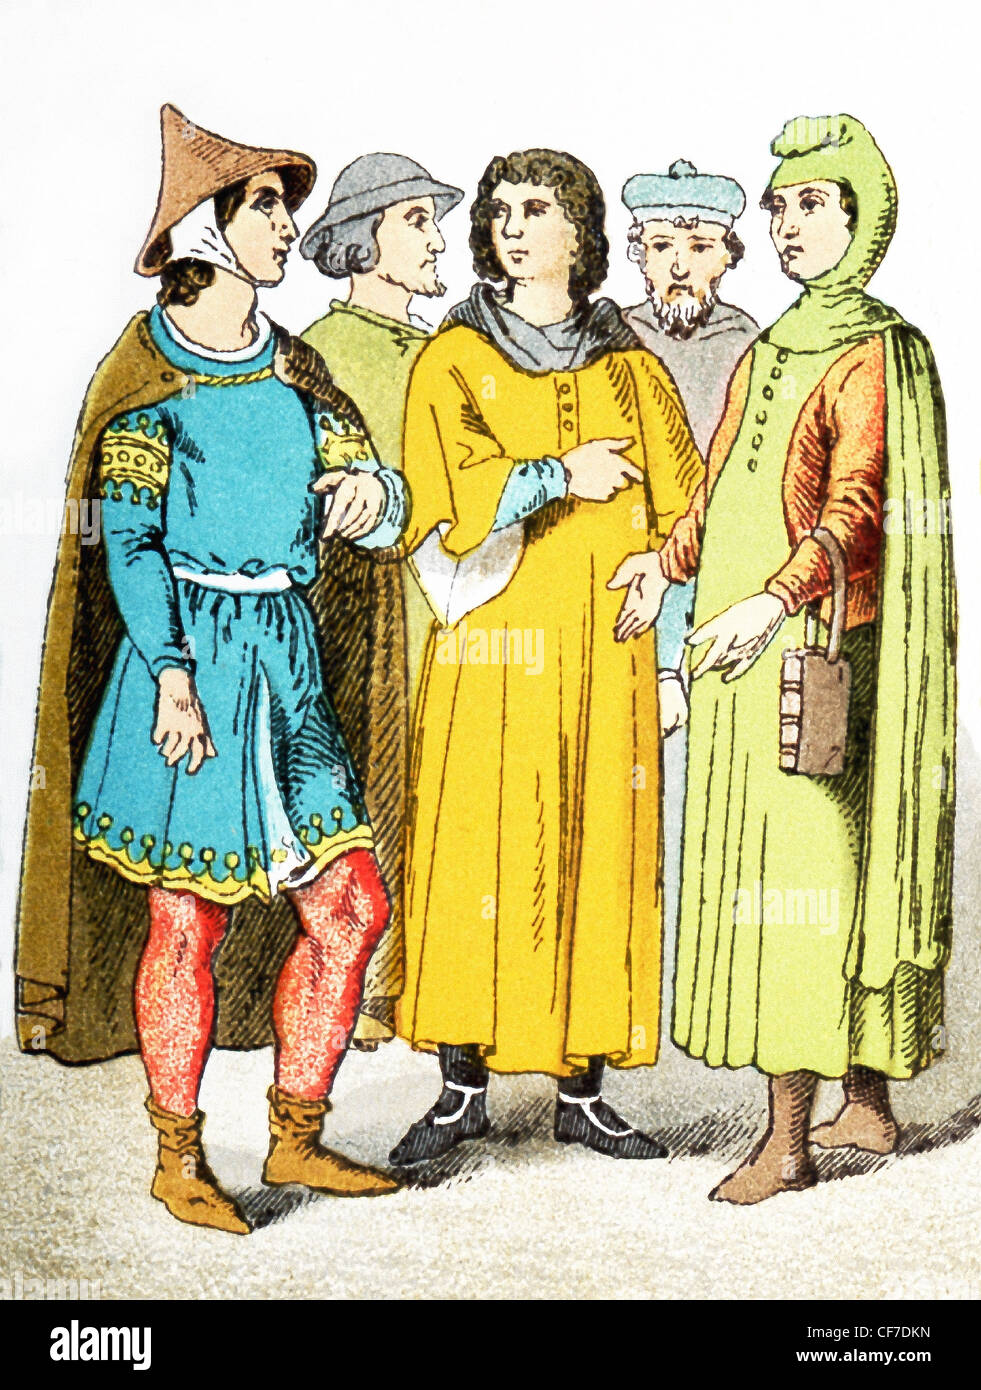 Las cifras en la ilustración representa a cinco ciudadanos franceses alrededor de A.D. 1200. La ilustración se remonta a 1882. Foto de stock